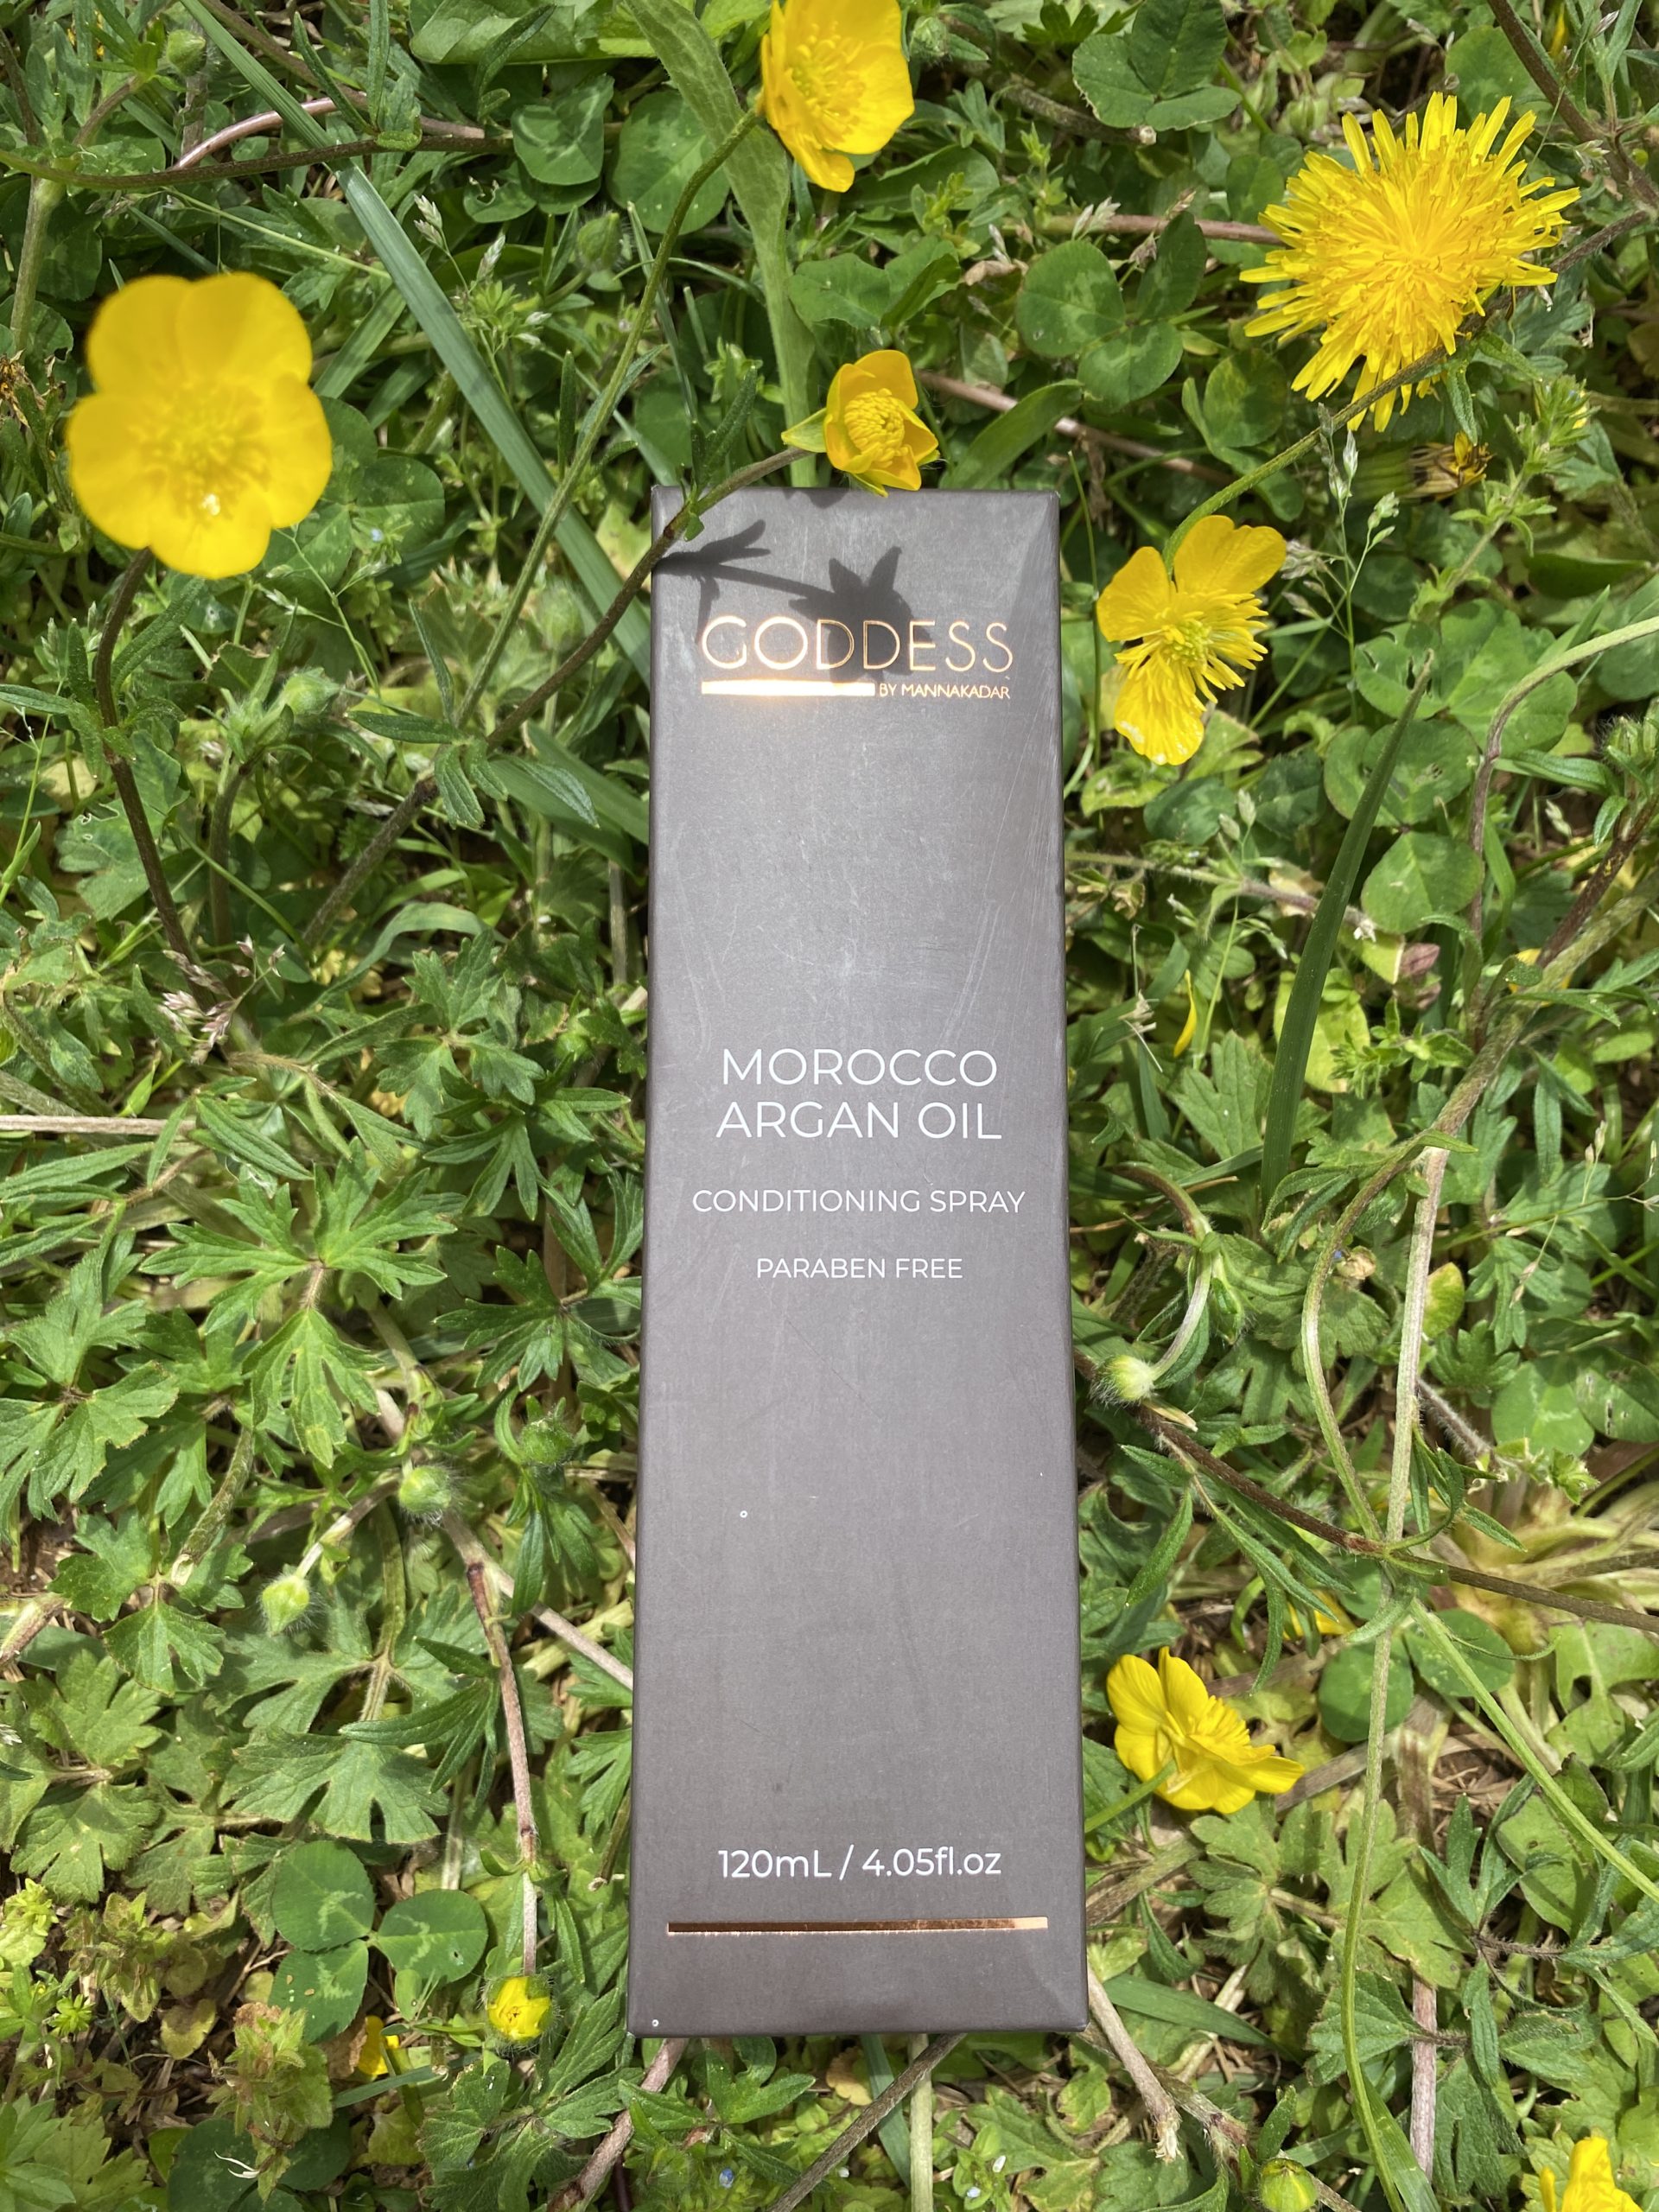 Goddess Morocco Argan Oil Conditioning Spray: Value of $32